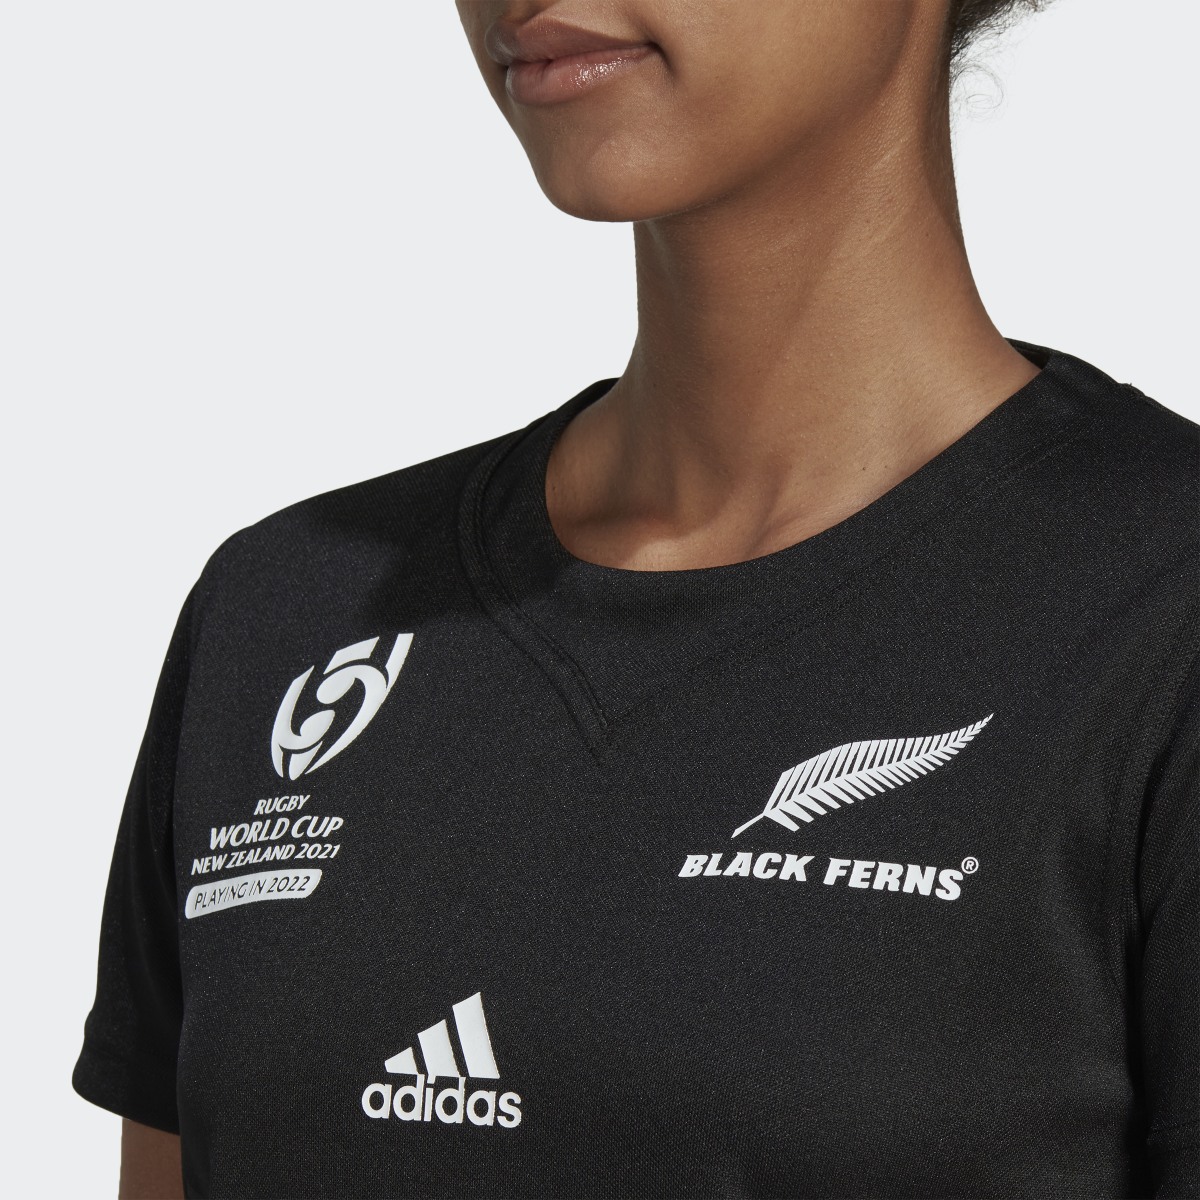 Adidas Camiseta primera equipación Black Ferns Rugby World Cup. 10